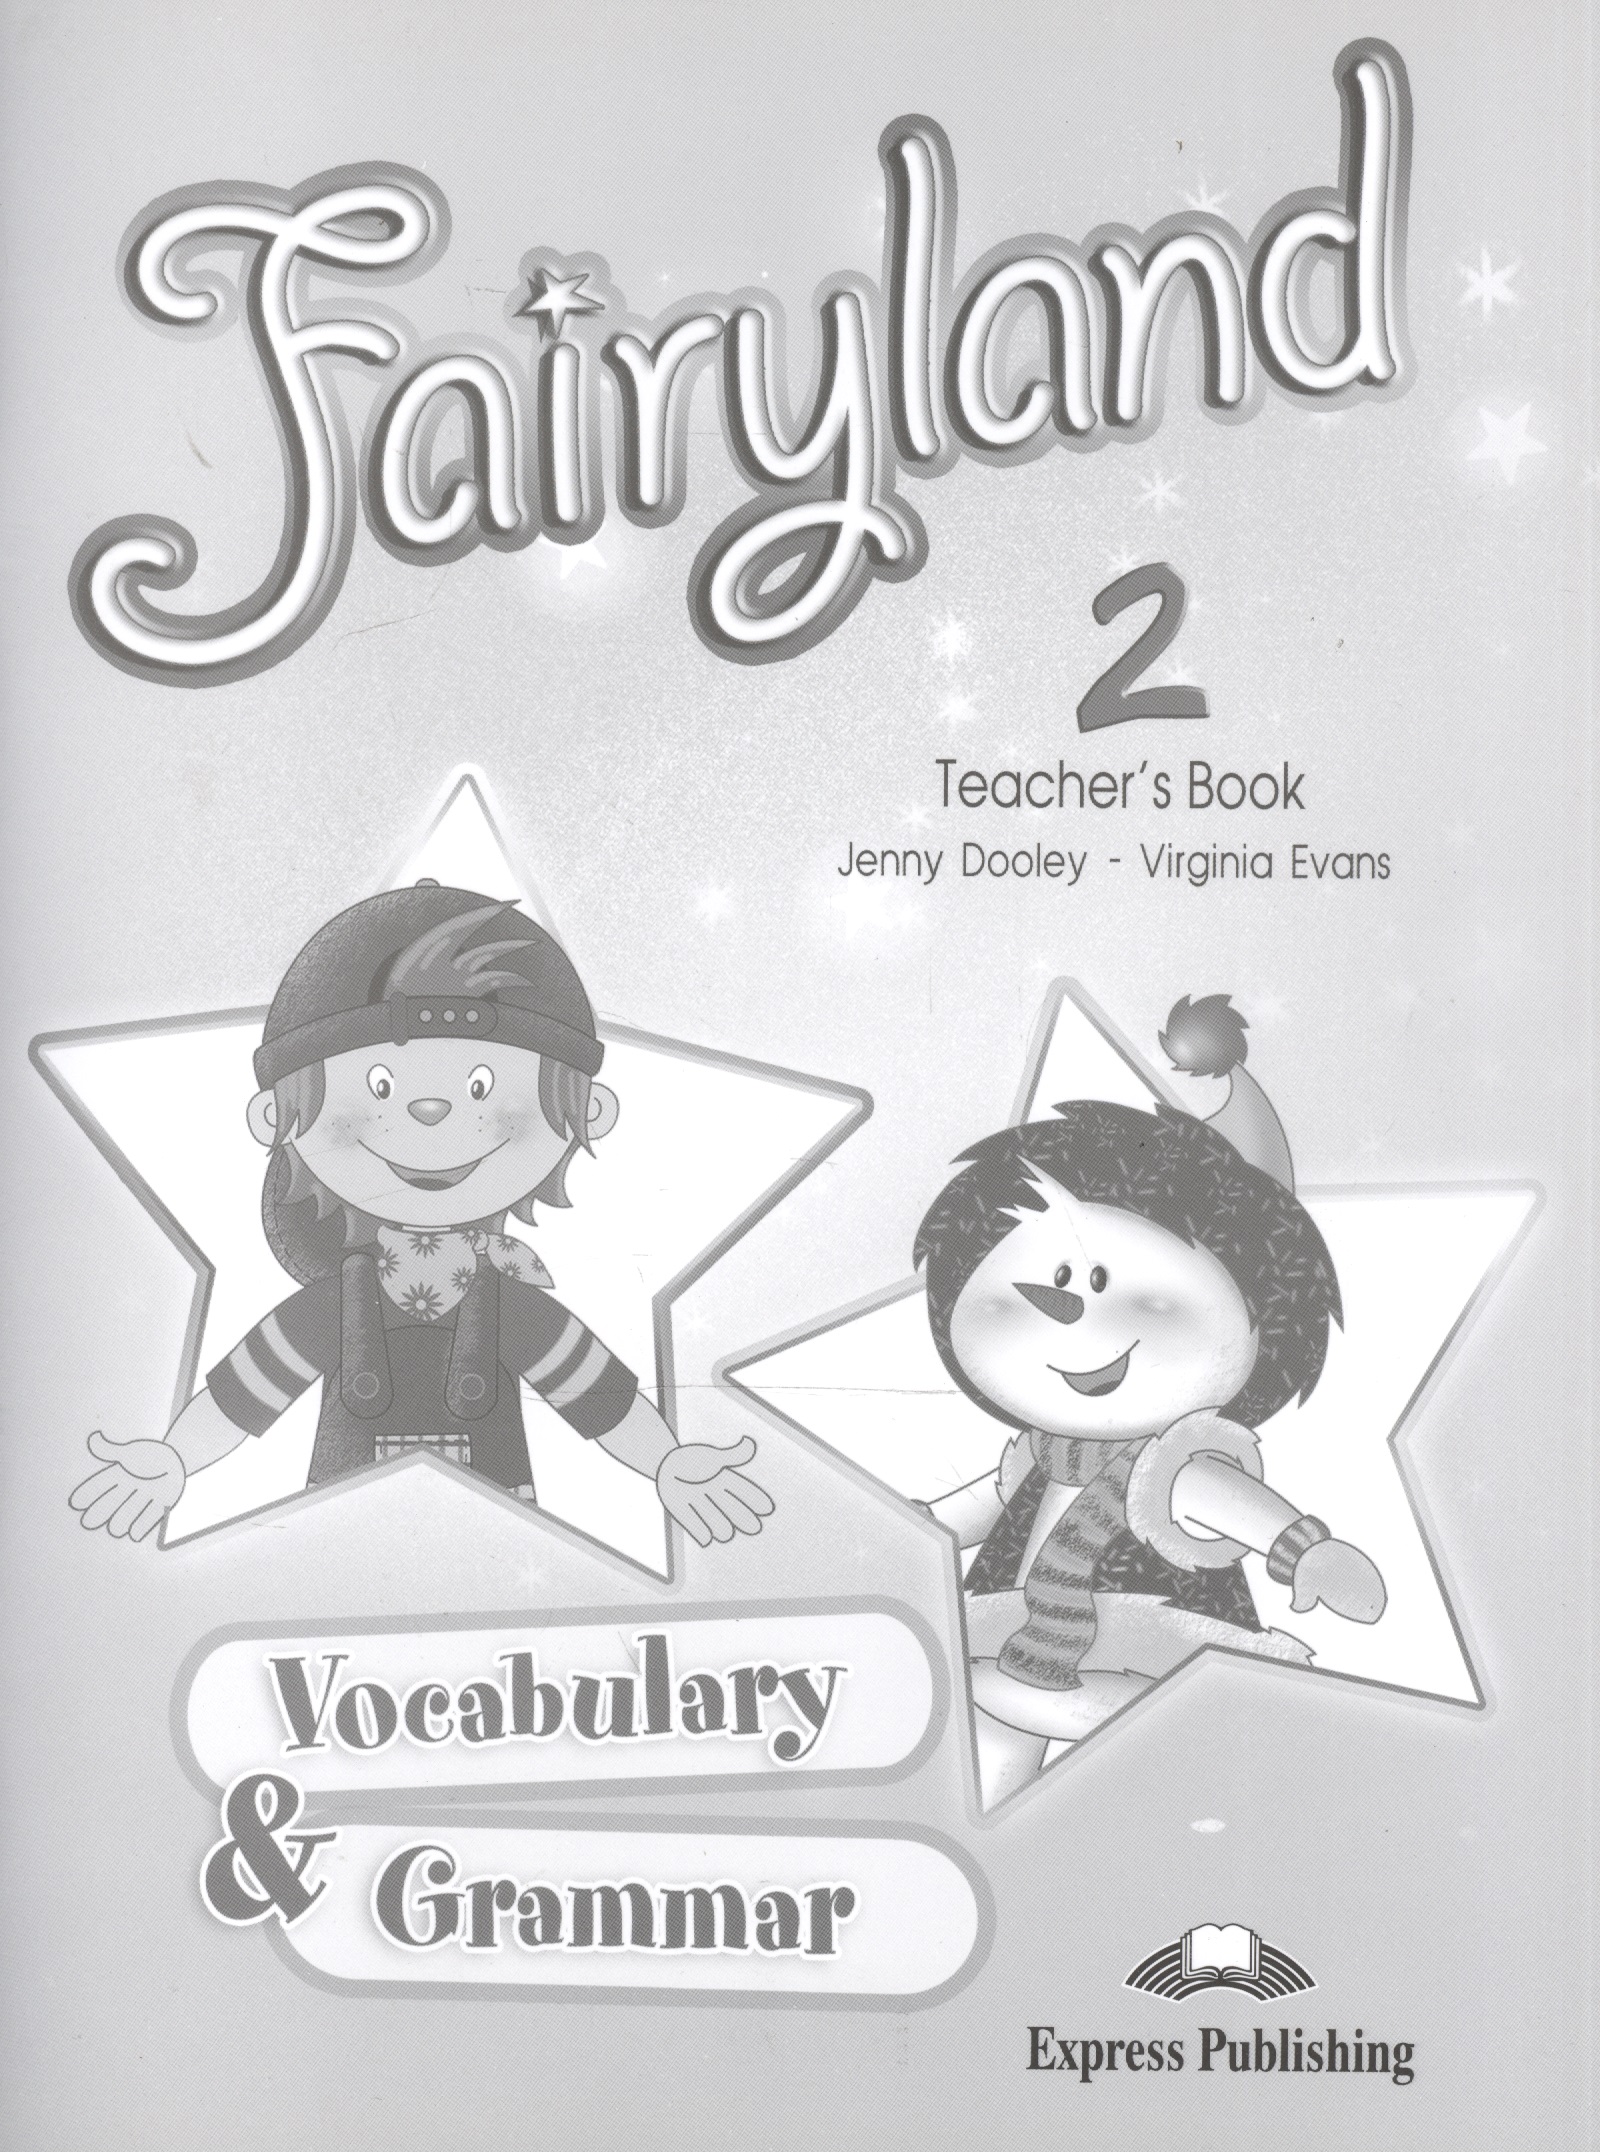 Эванс Вирджиния Fairyland 2. Vocabulary & Grammar Teachers book. Сборник лексических и грамматических упр. КДУ.